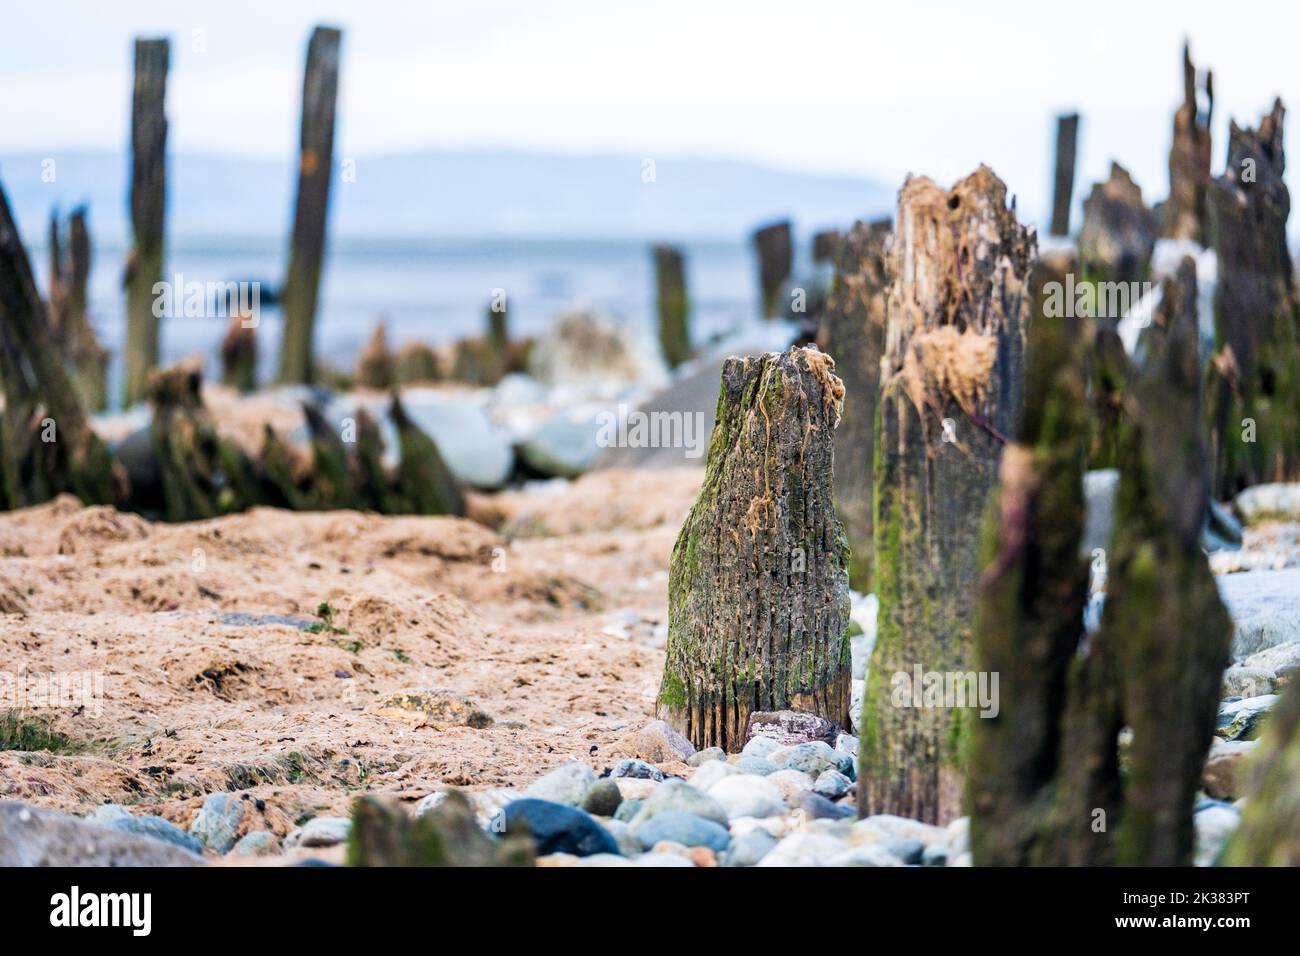 Les bois en décomposition des défenses de la mer sur une plage au pays de Galles Banque D'Images